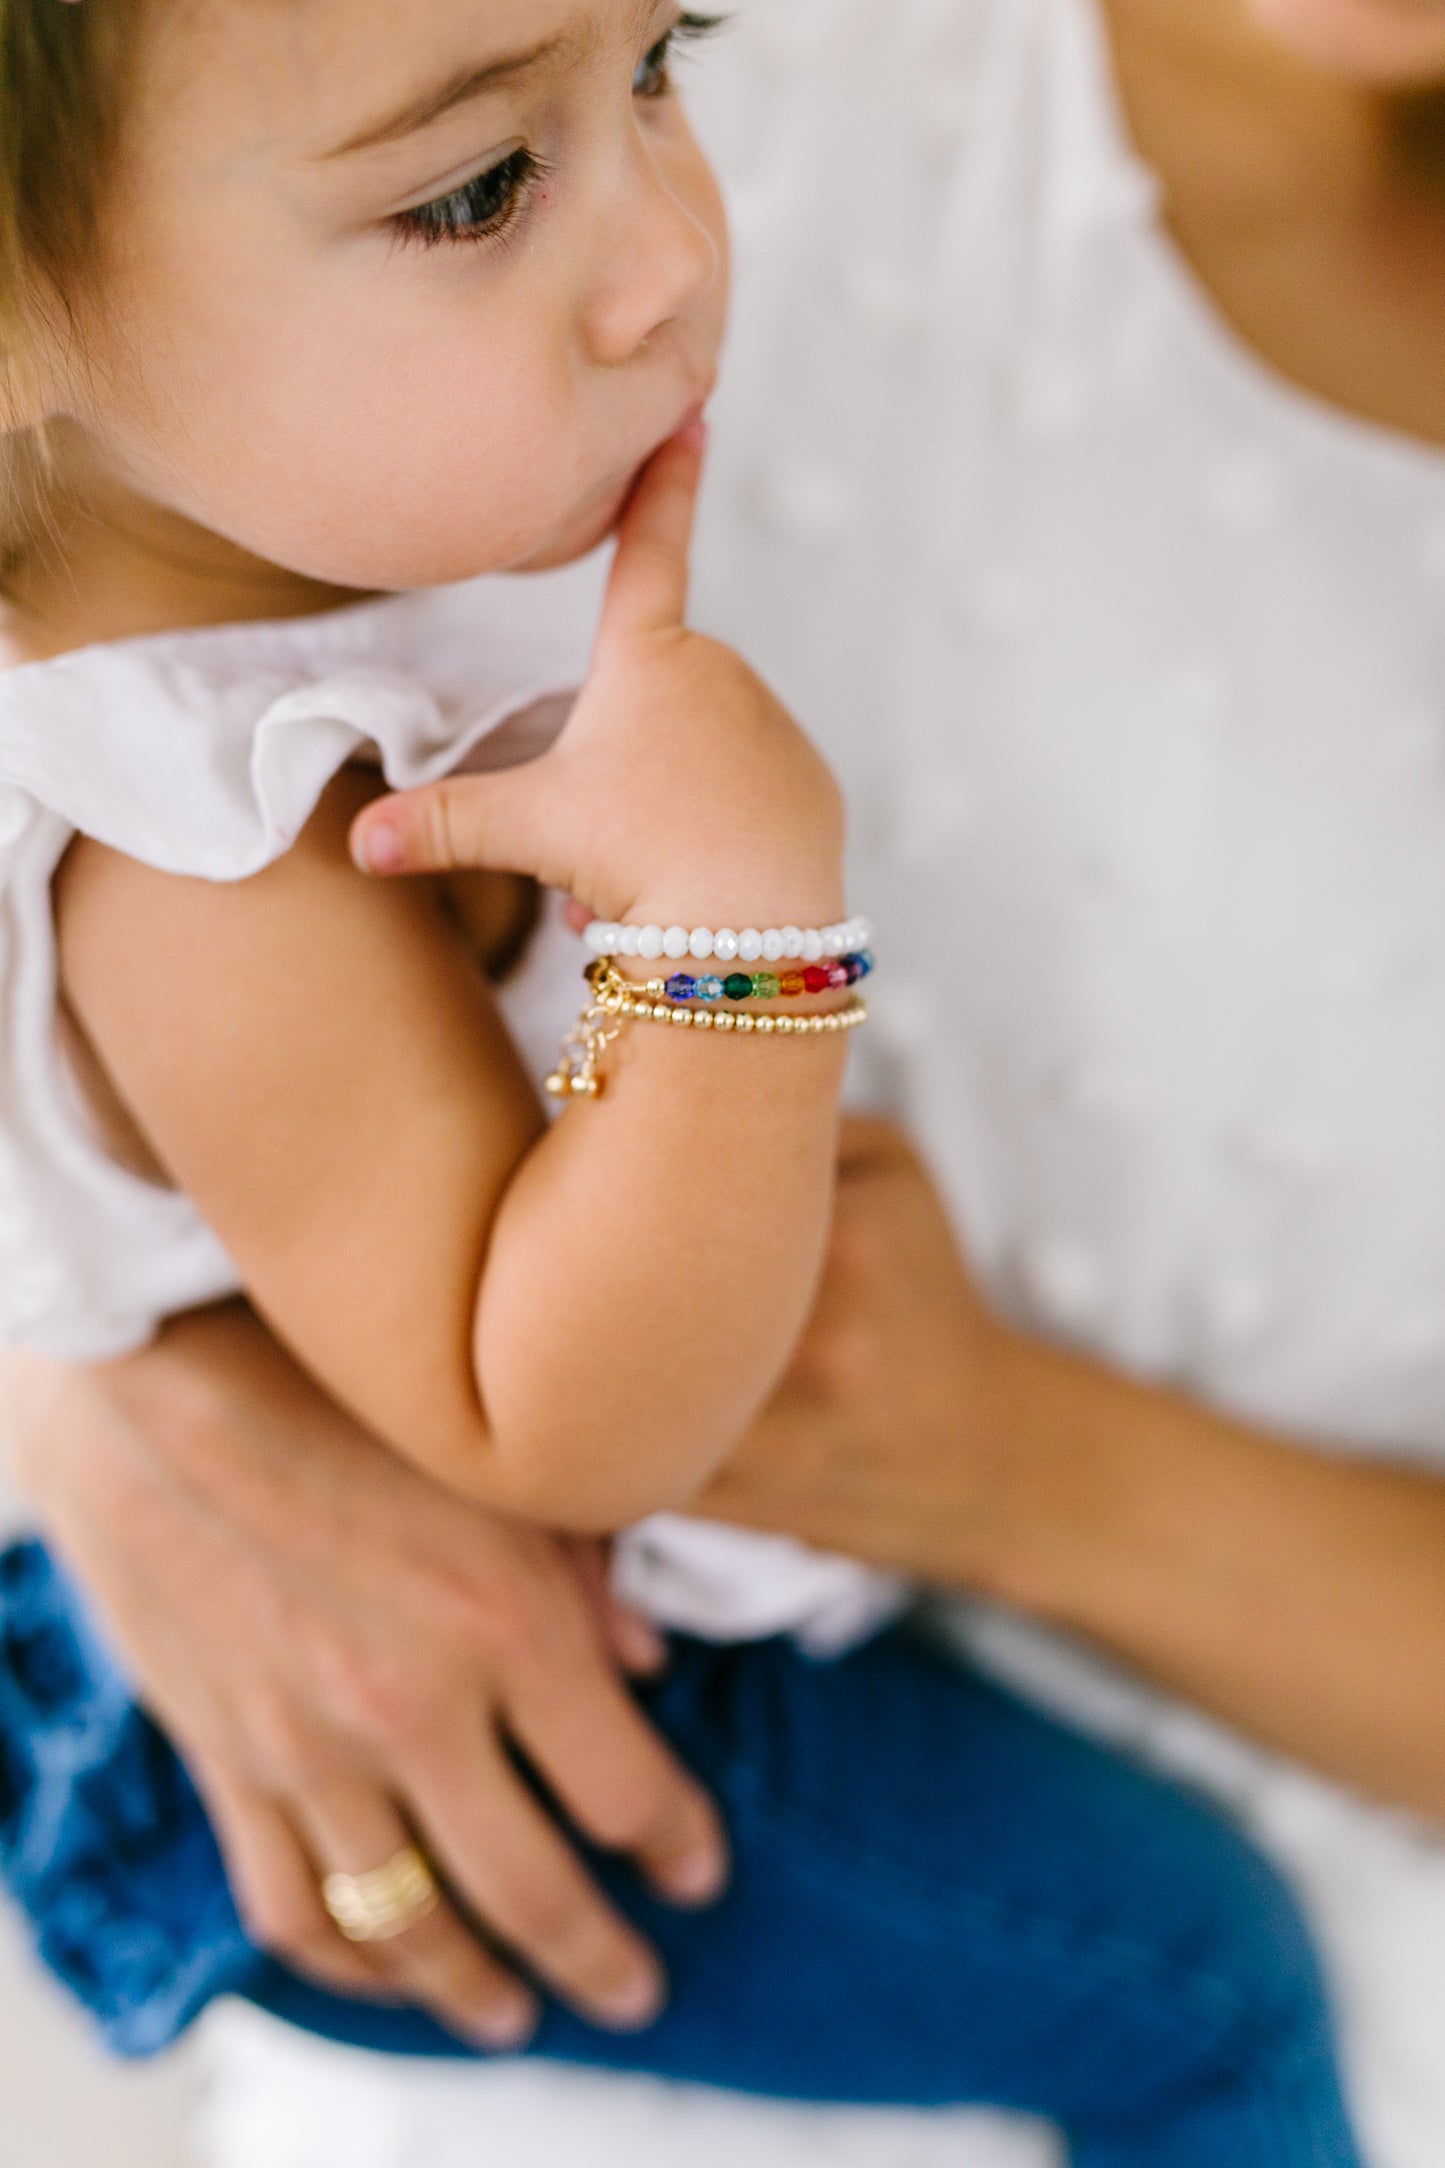 Baby Braceletbaby Boy Bracelet Baby Gold Plated Bracelet - Etsy